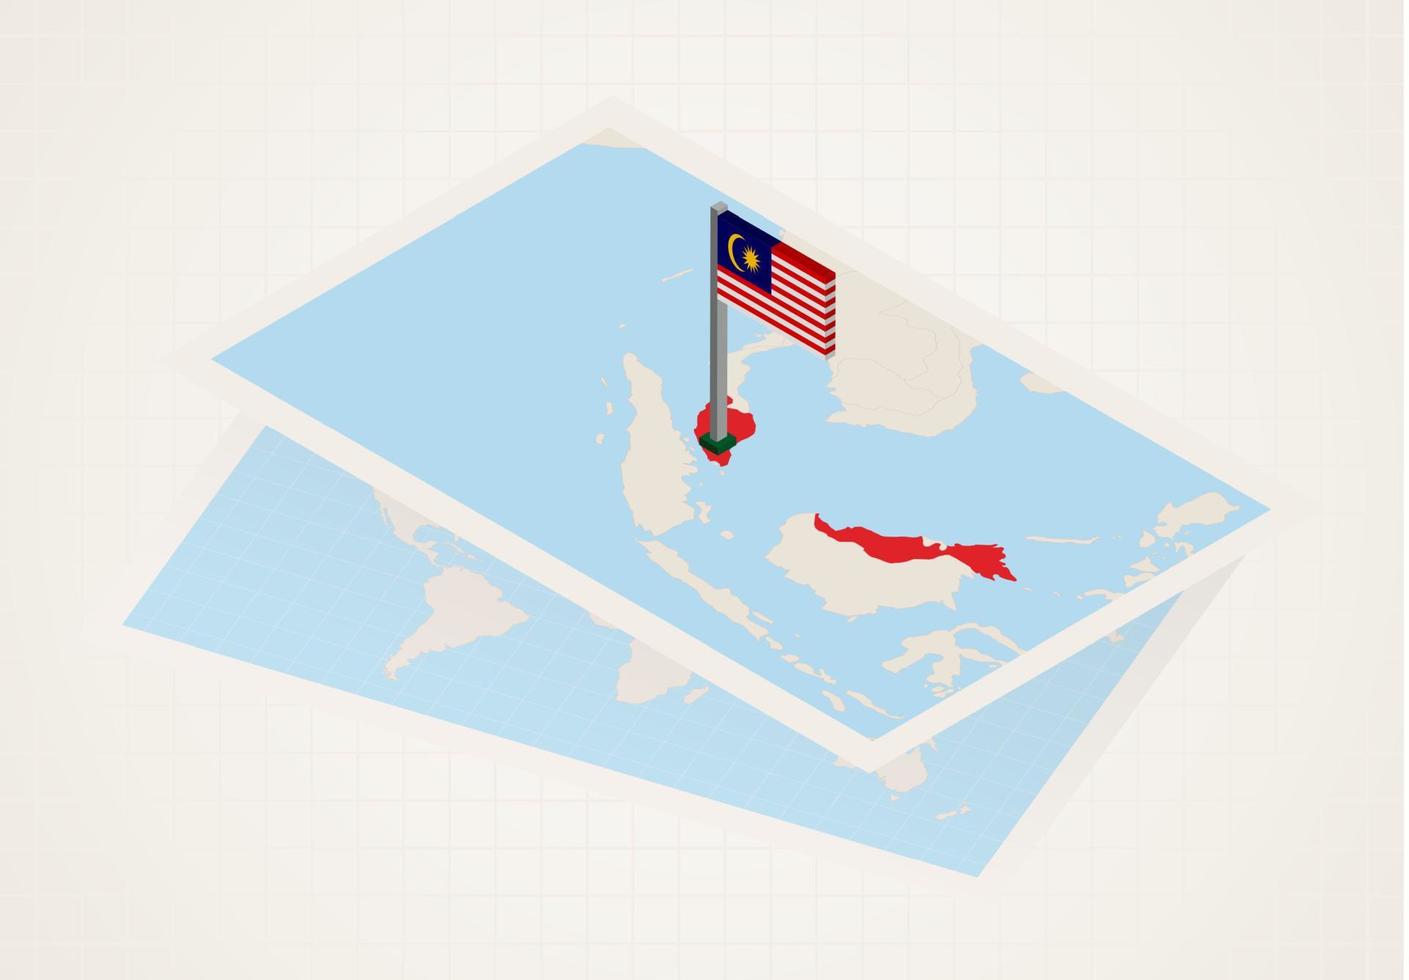 malaisie sélectionnée sur la carte avec le drapeau isométrique de la malaisie. vecteur